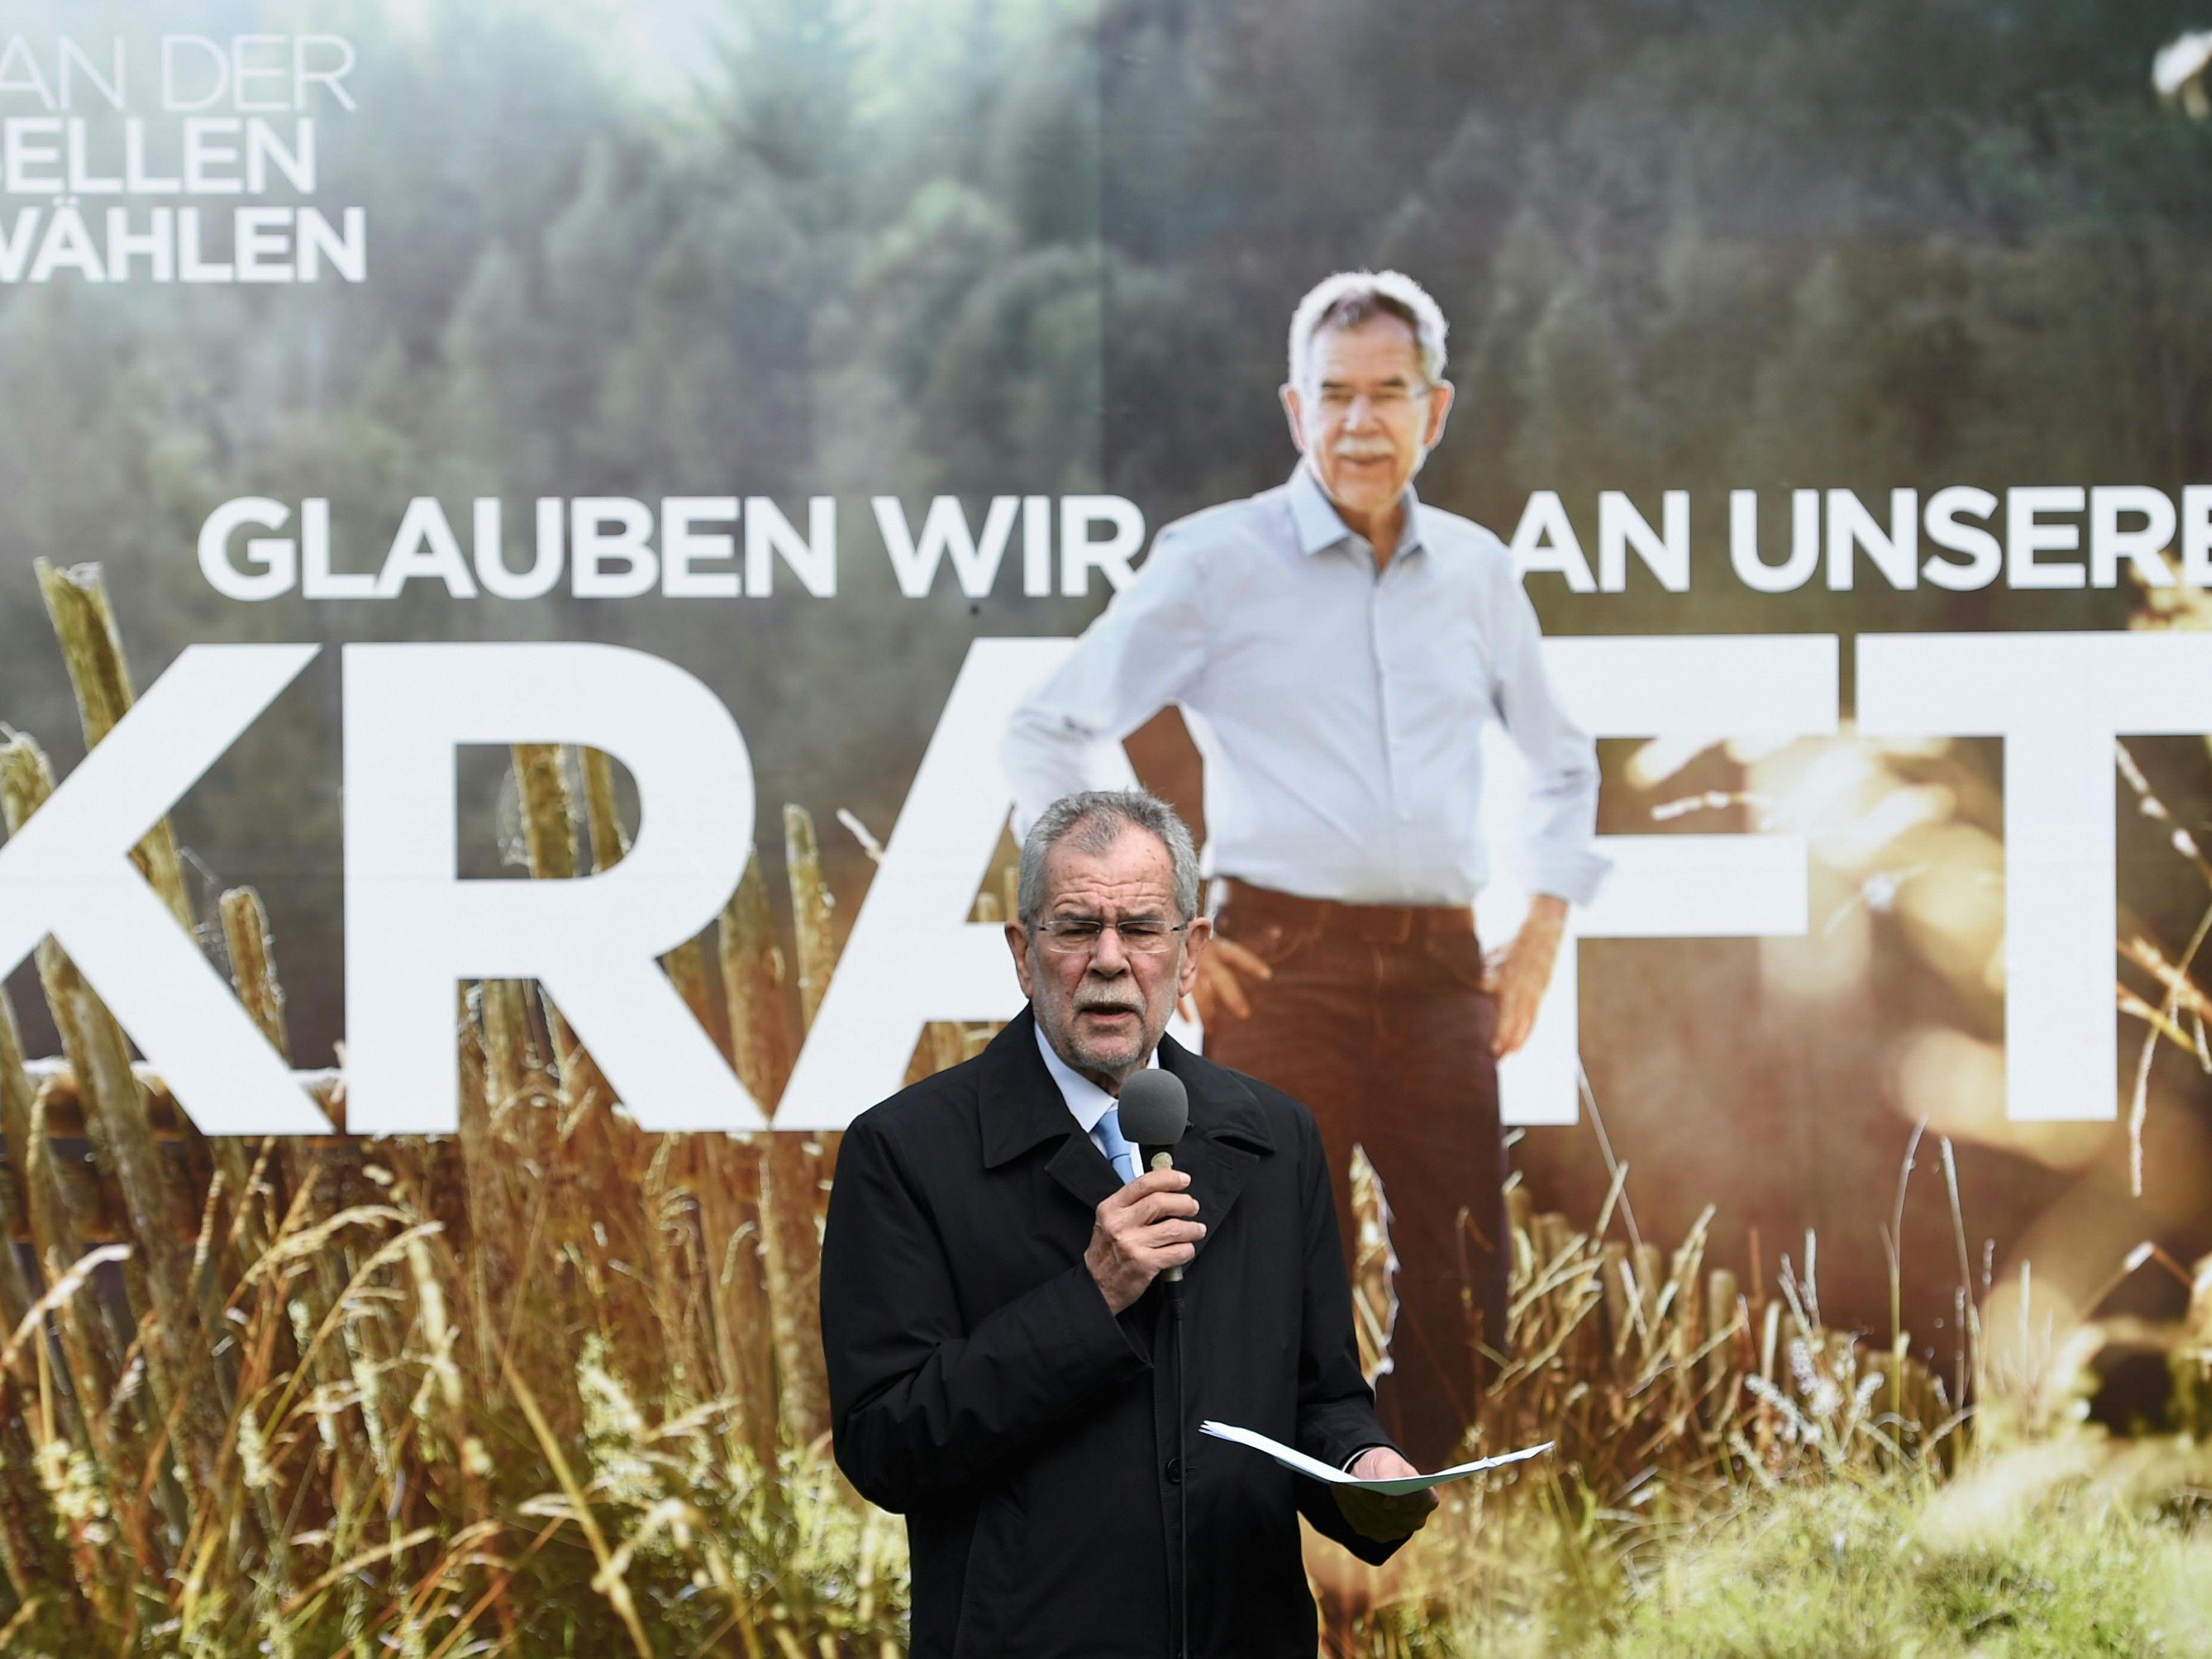 Die FPÖ kritisiert die Plakat-Überlassung scharf.